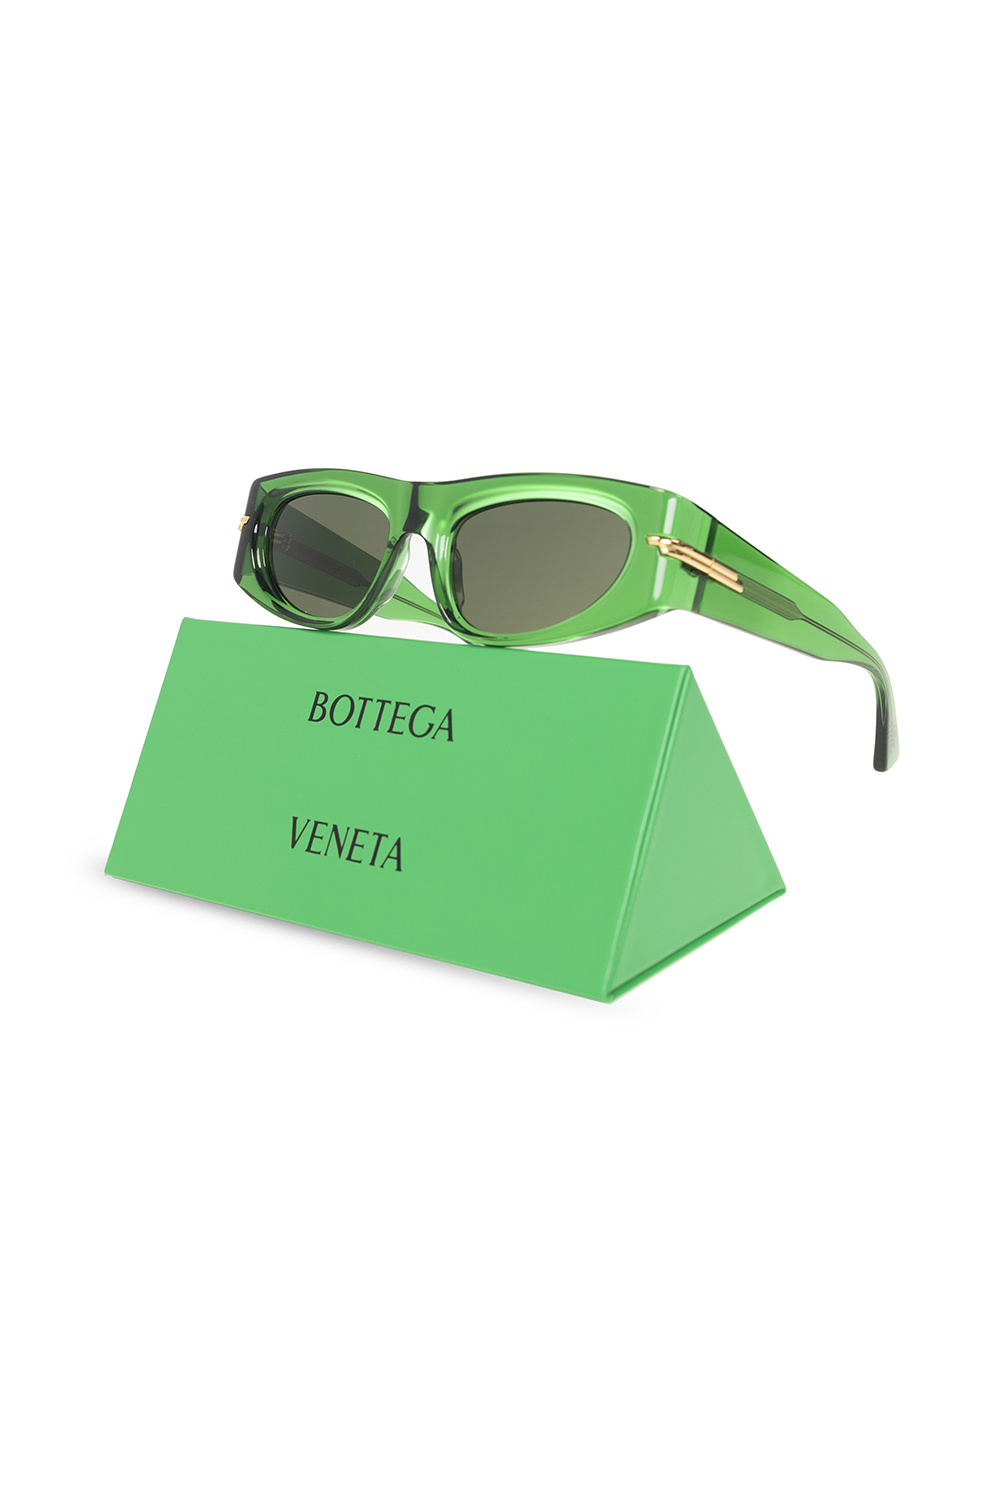 Bottega Veneta Sunglasses CALVIN KLEIN JEANS CK20702S 001